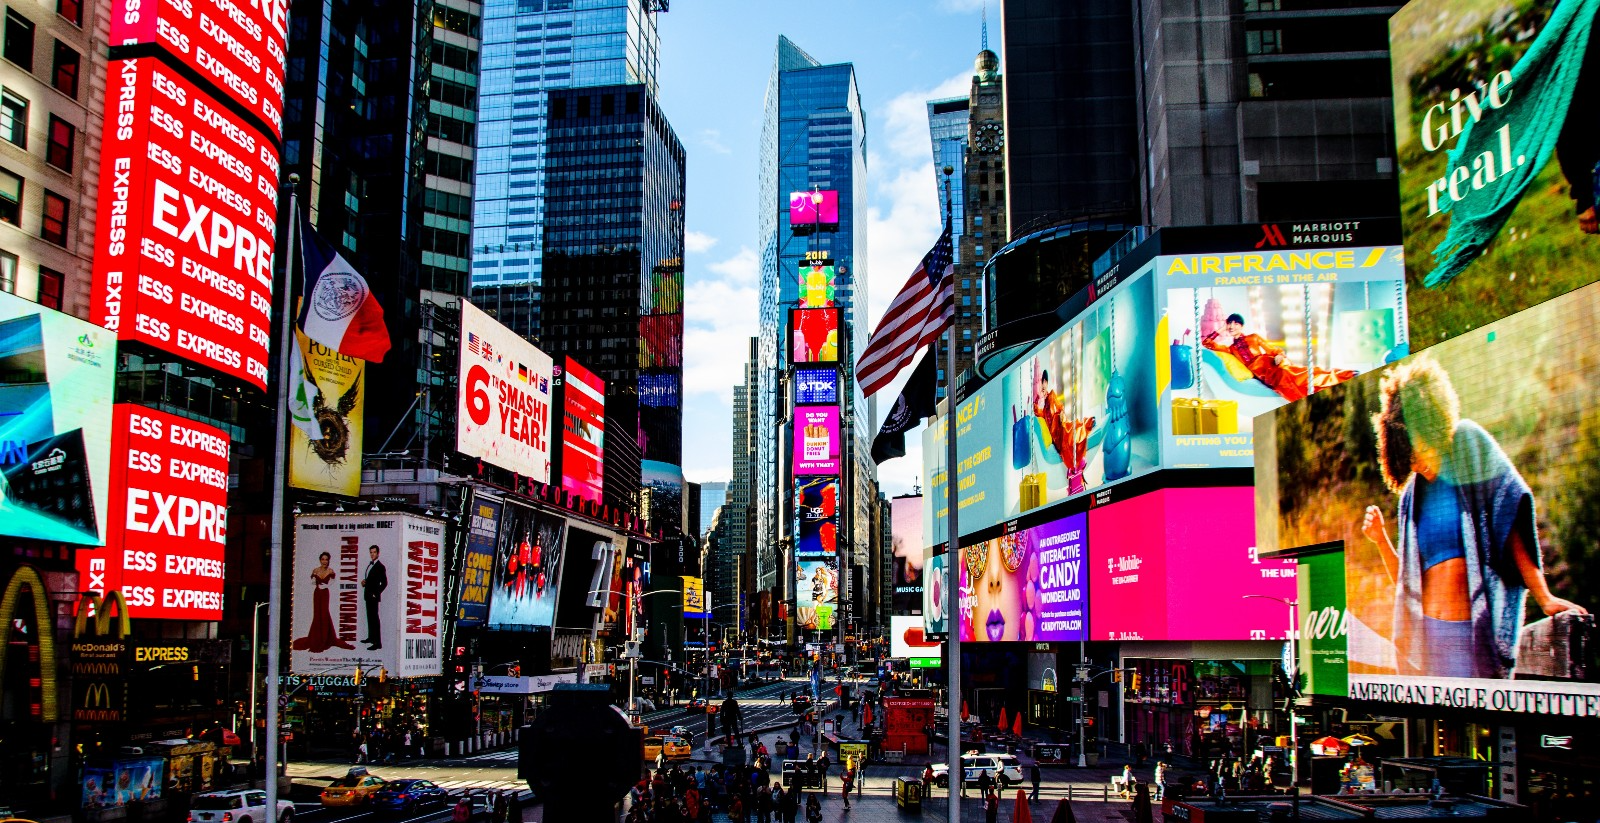 [광고 이야기] 세계의 옥외광고 중심지 "타임스퀘어(Times Square)"